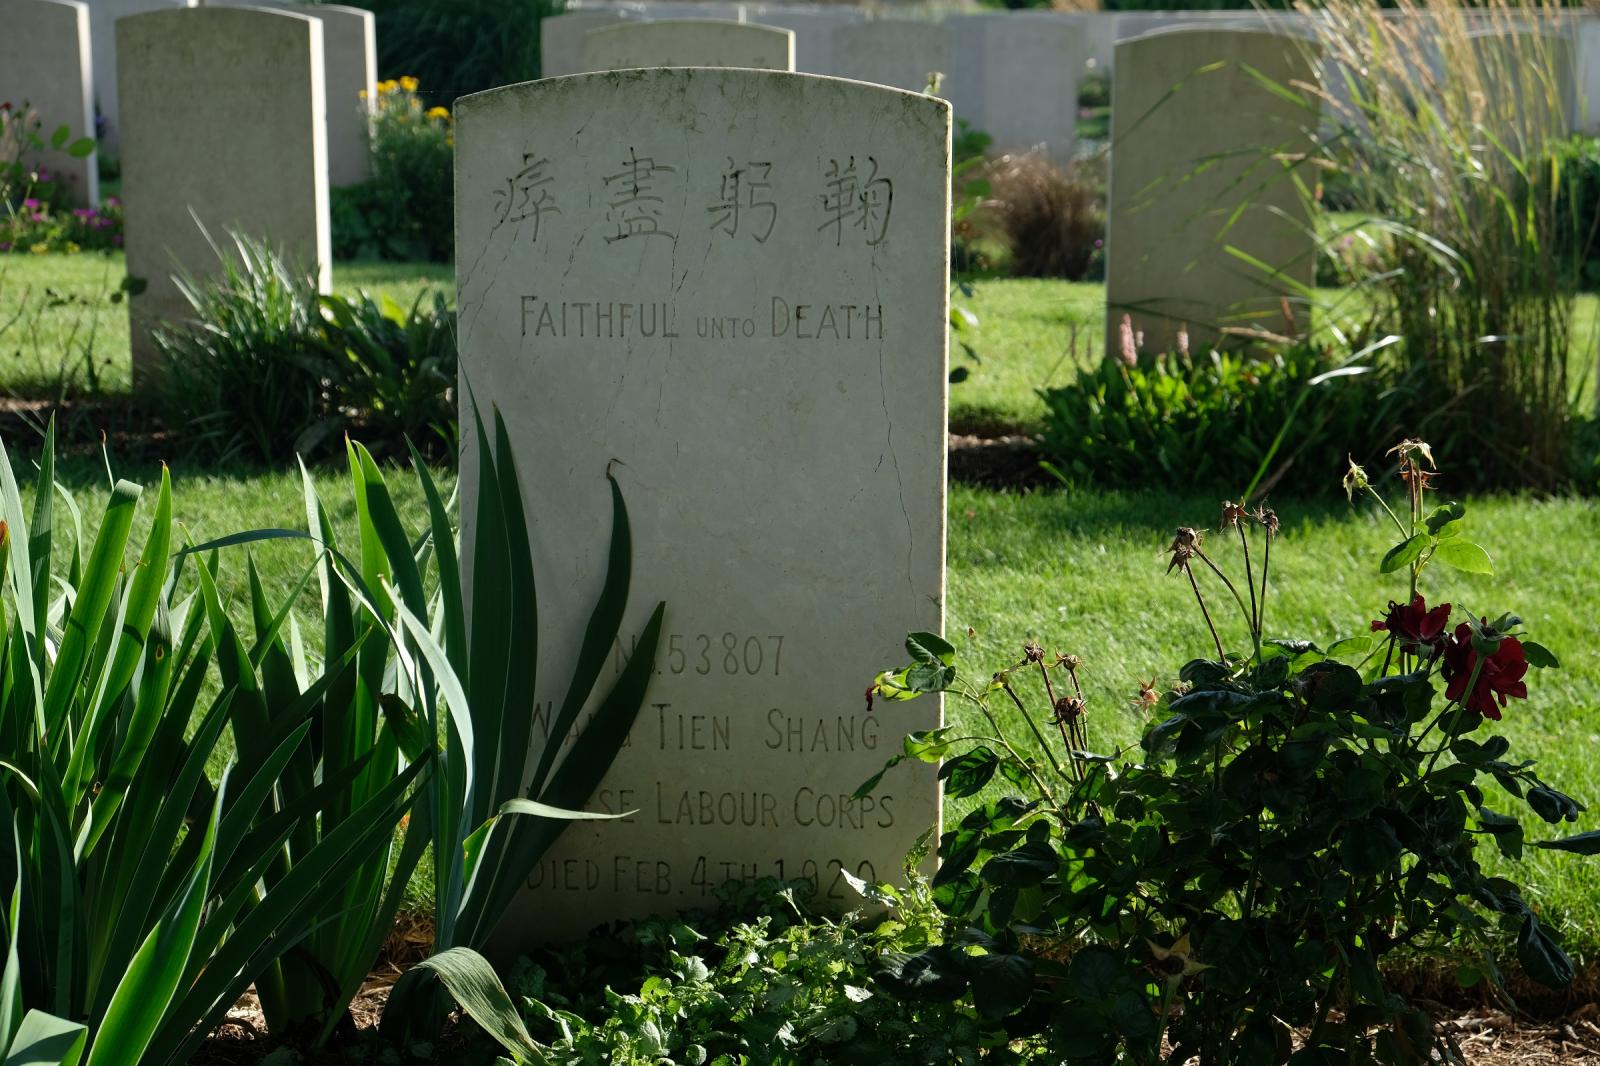 Somme/Mémoire - Le cimetière chinois de Noyelles sur Mer